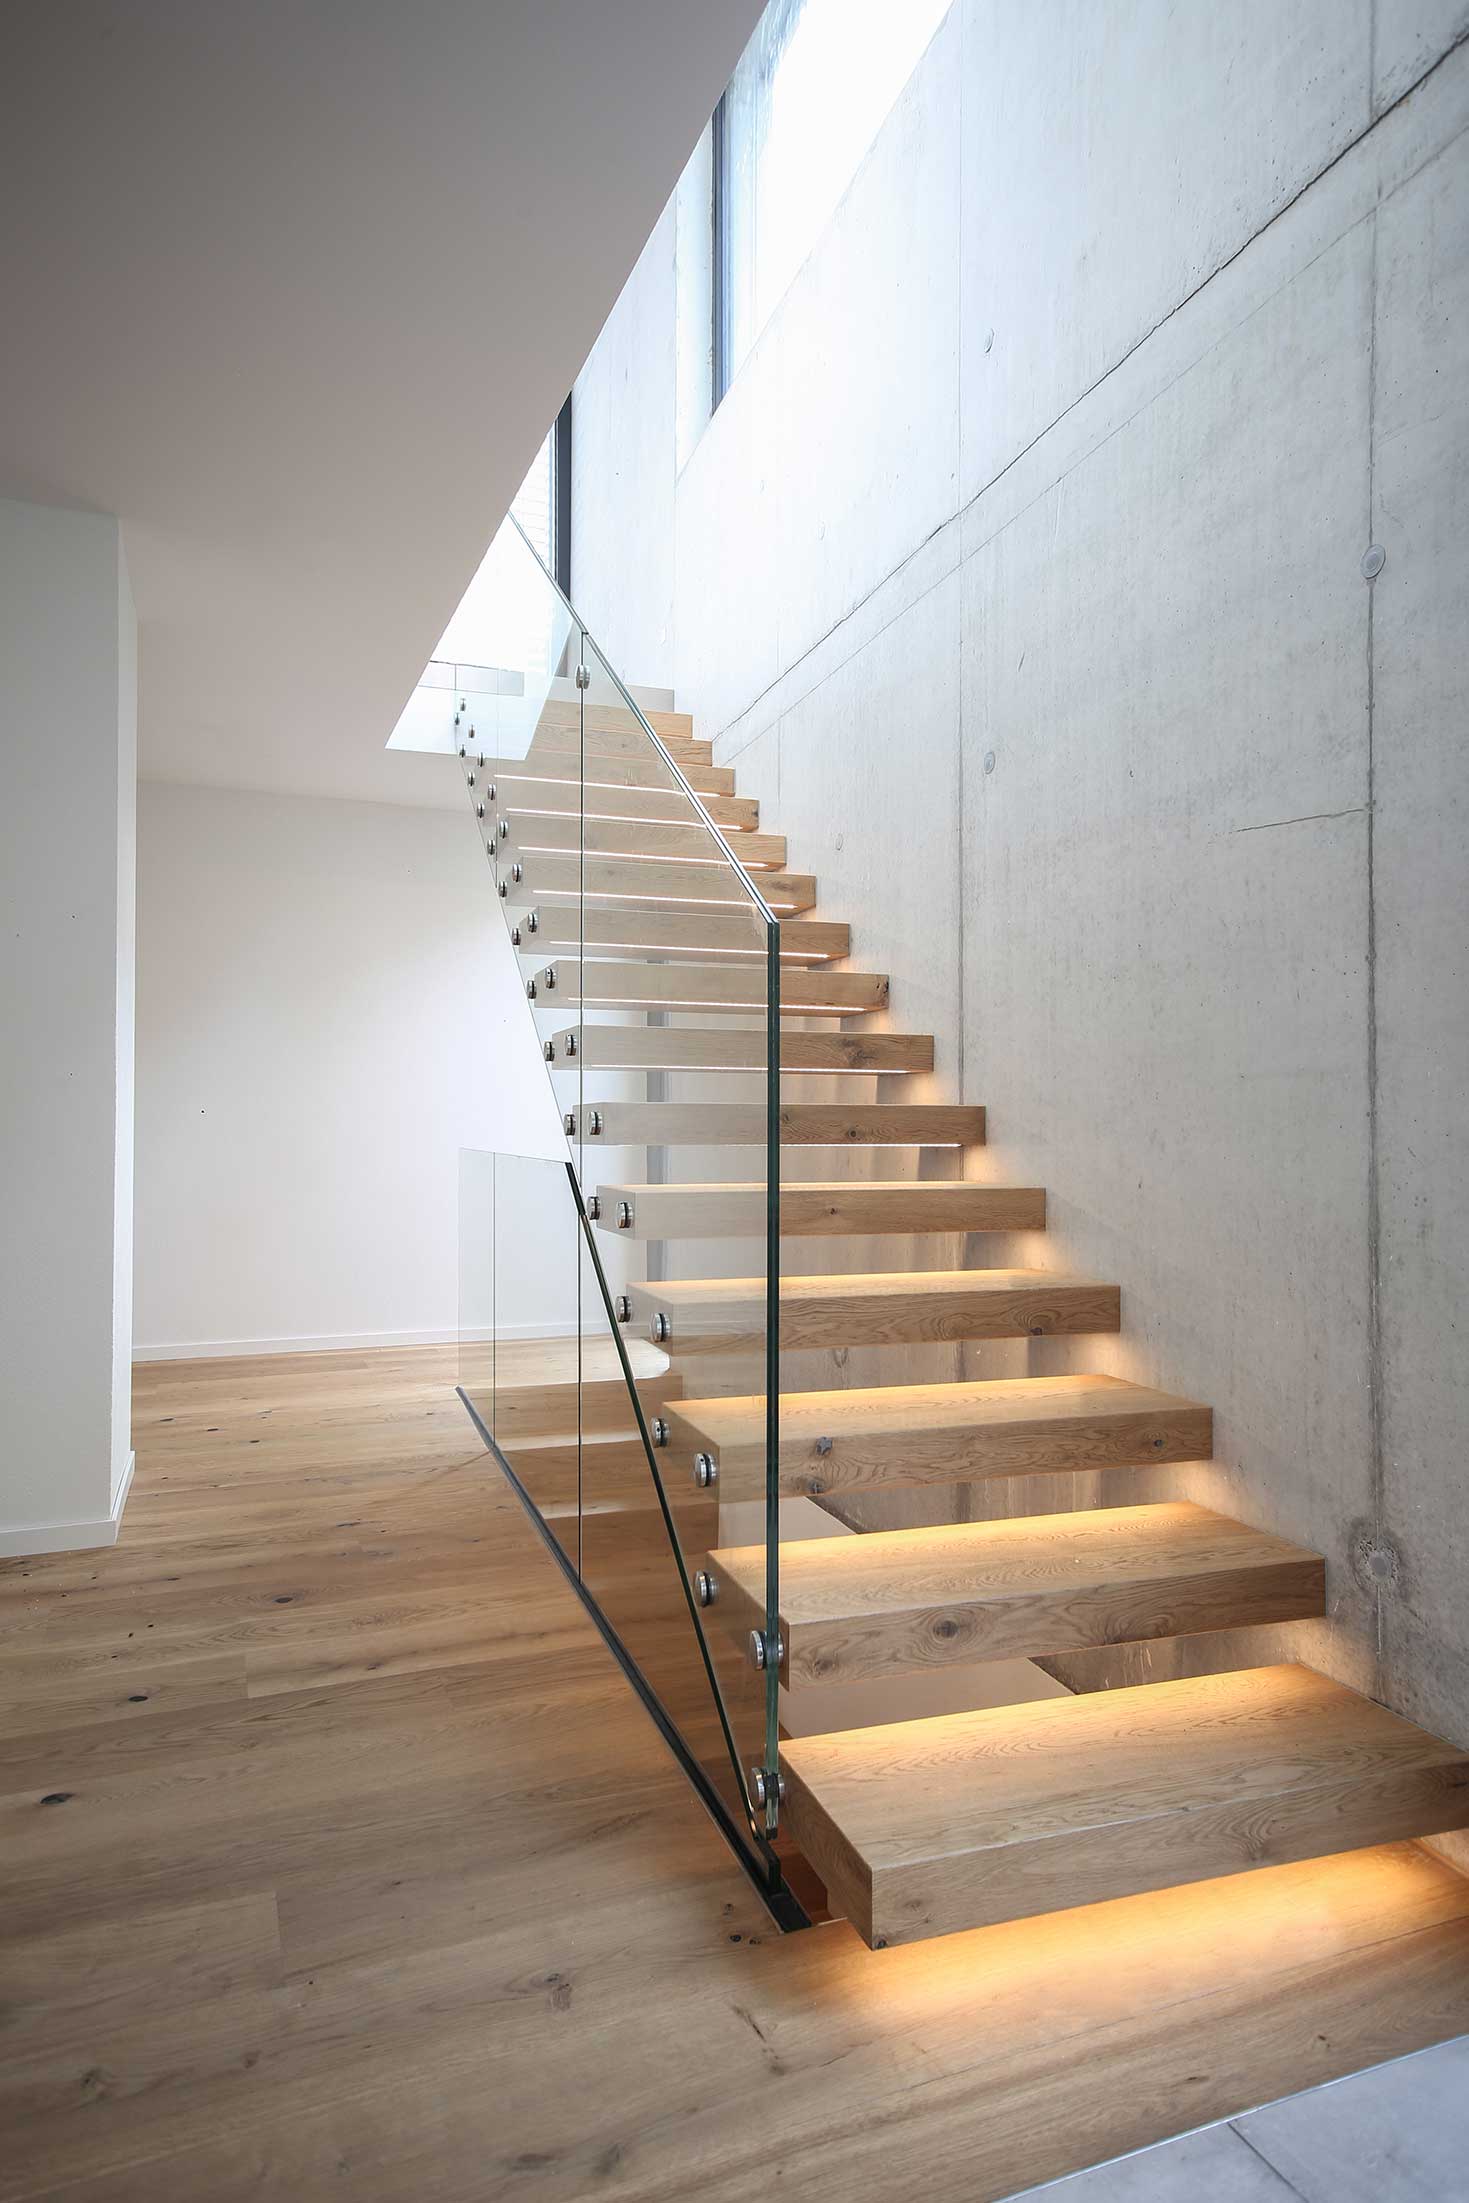 Aufstieg einer Treppe mit Beleuchtung in den Stufen